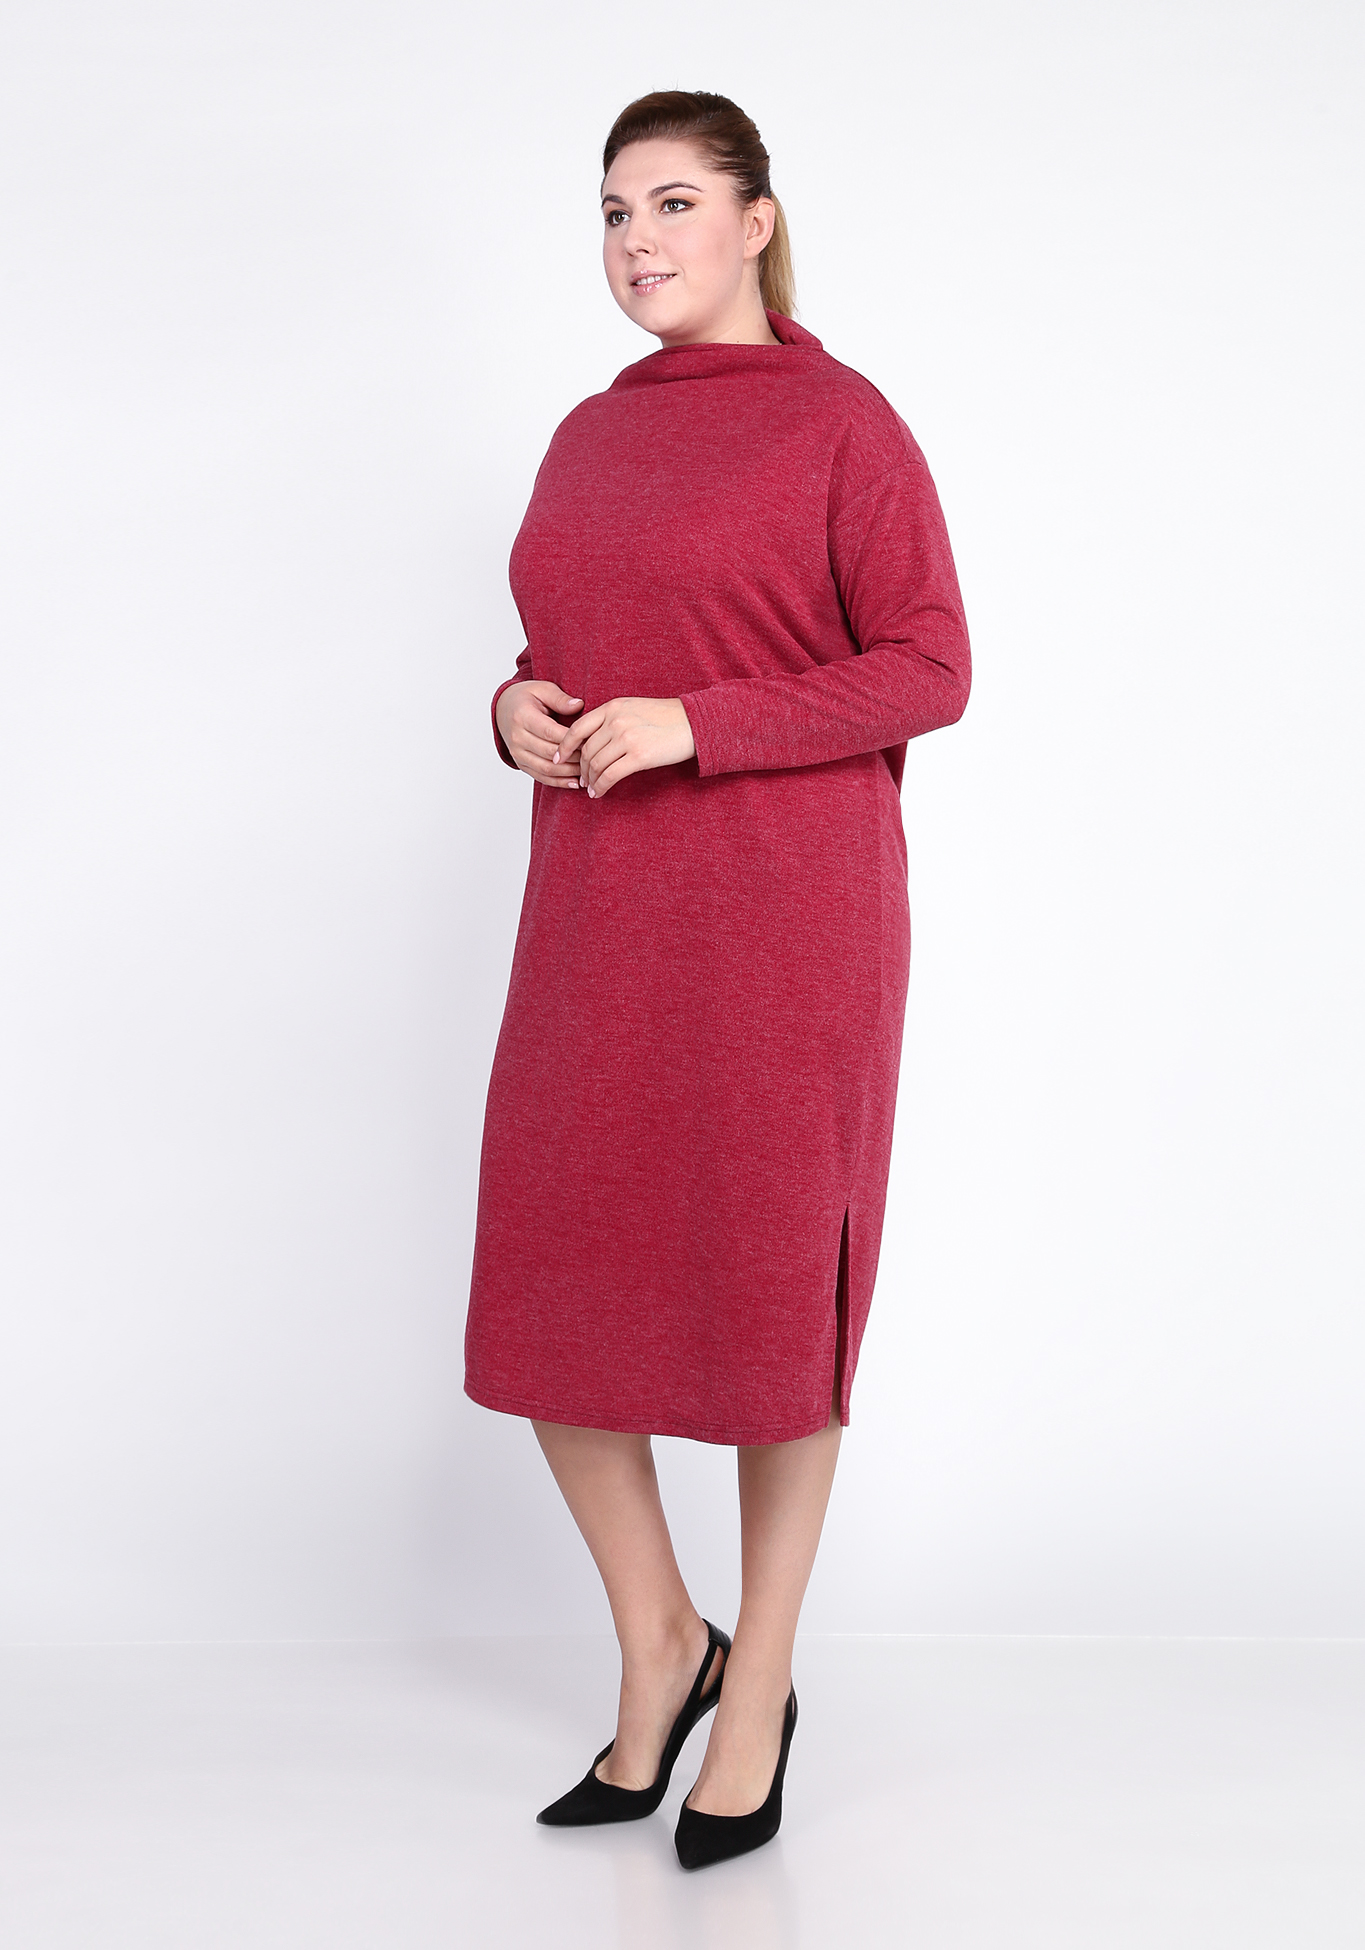 Платье с разрезом сбоку Alex Voice Collection, размер 50, цвет ягодный - фото 6